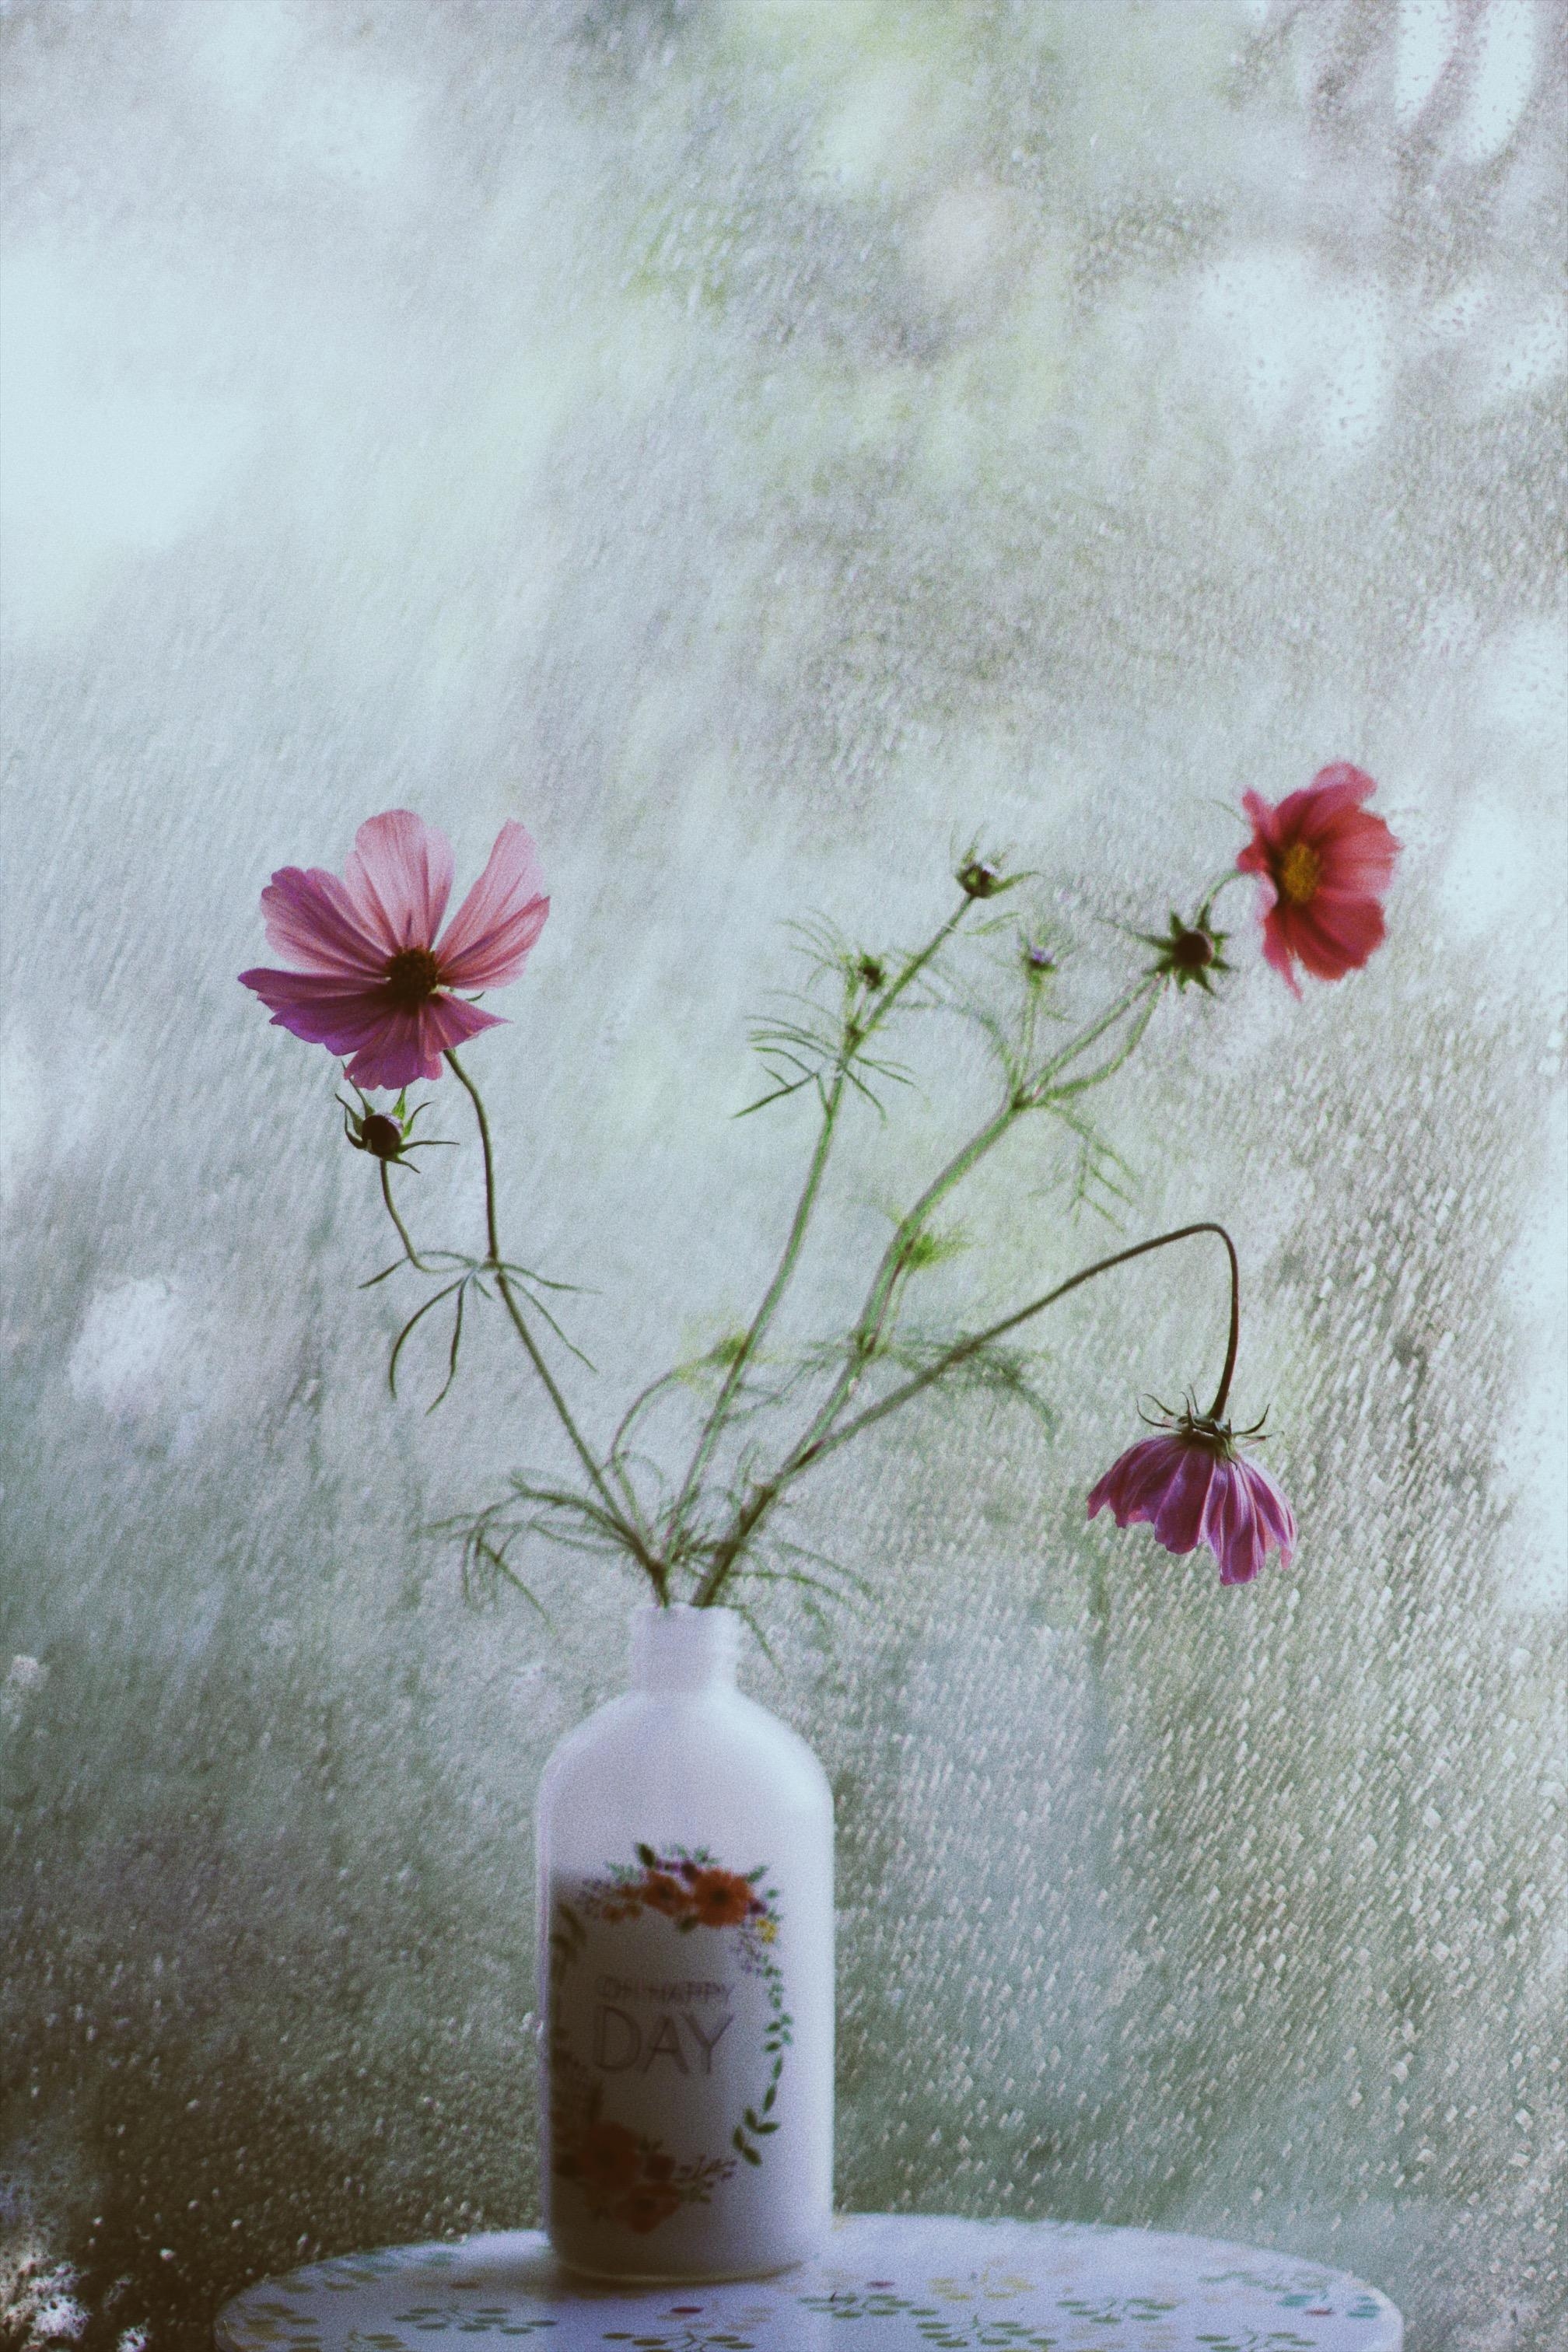 🌸🌸🌸
#couchliebt#flowerpower#sommer#vase#regen#scandi#urbanjungle